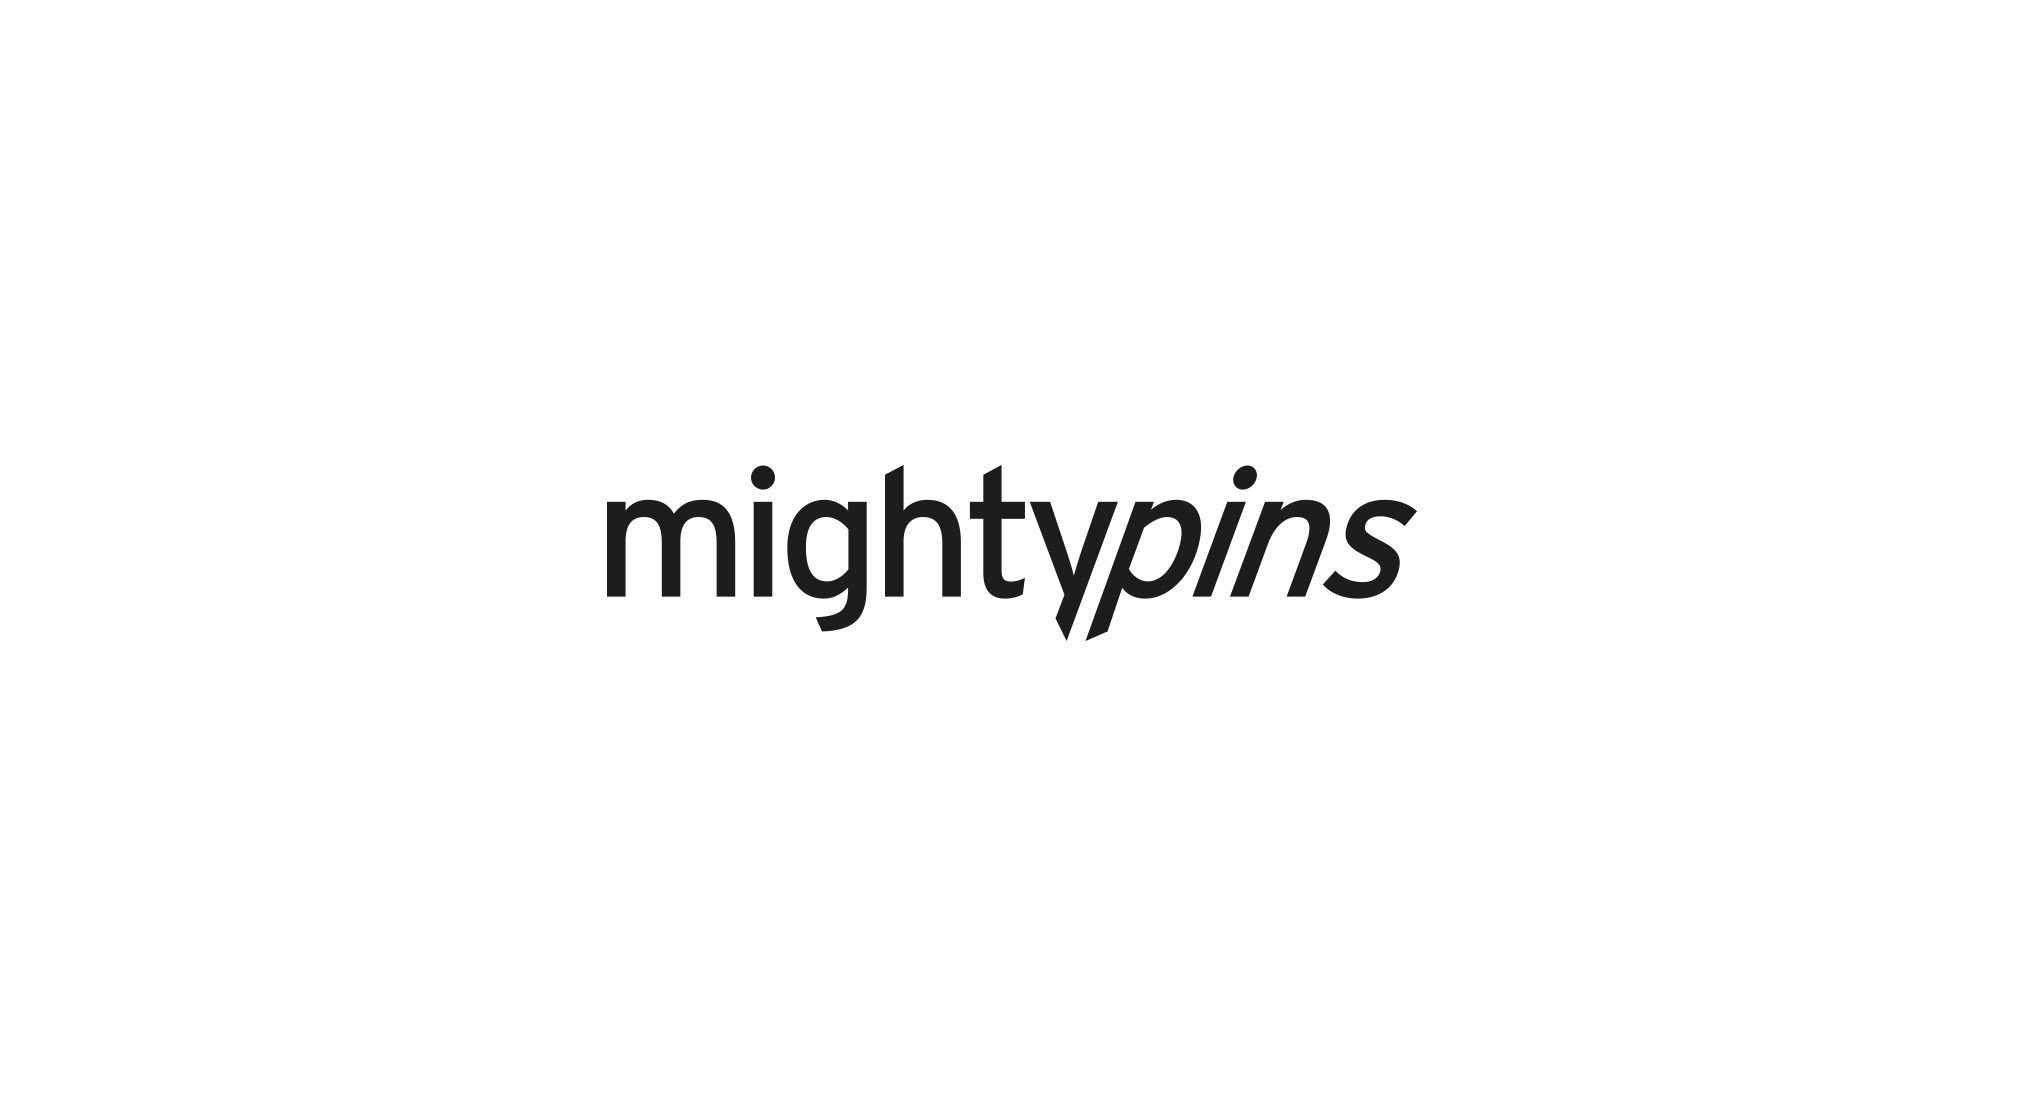 mightypins, Groteskschriftzug in schwarz